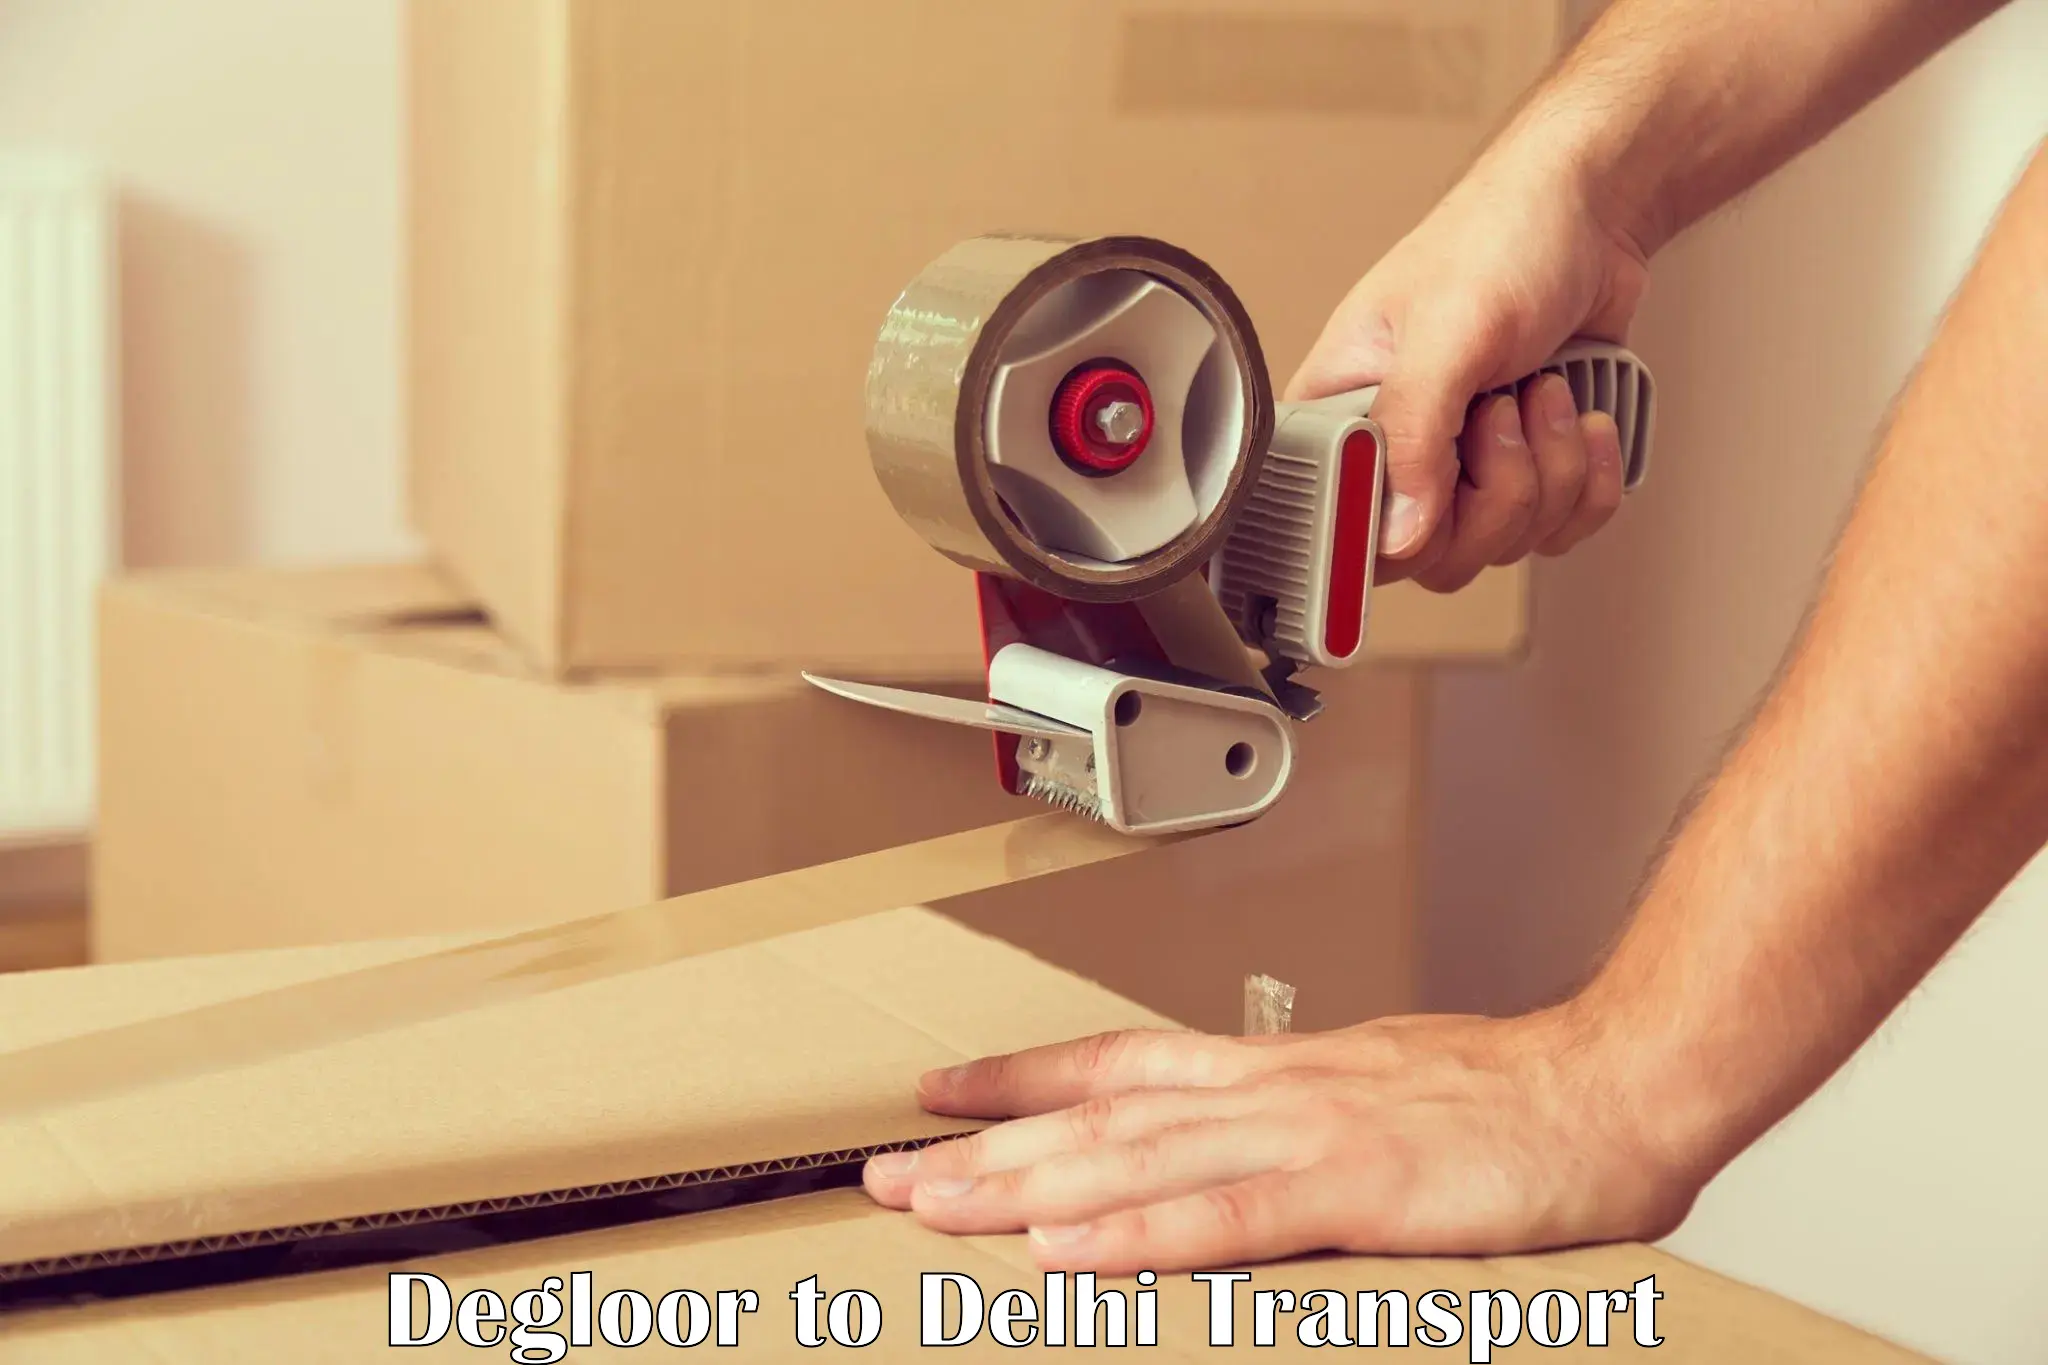 Furniture transport service Degloor to Delhi Technological University DTU